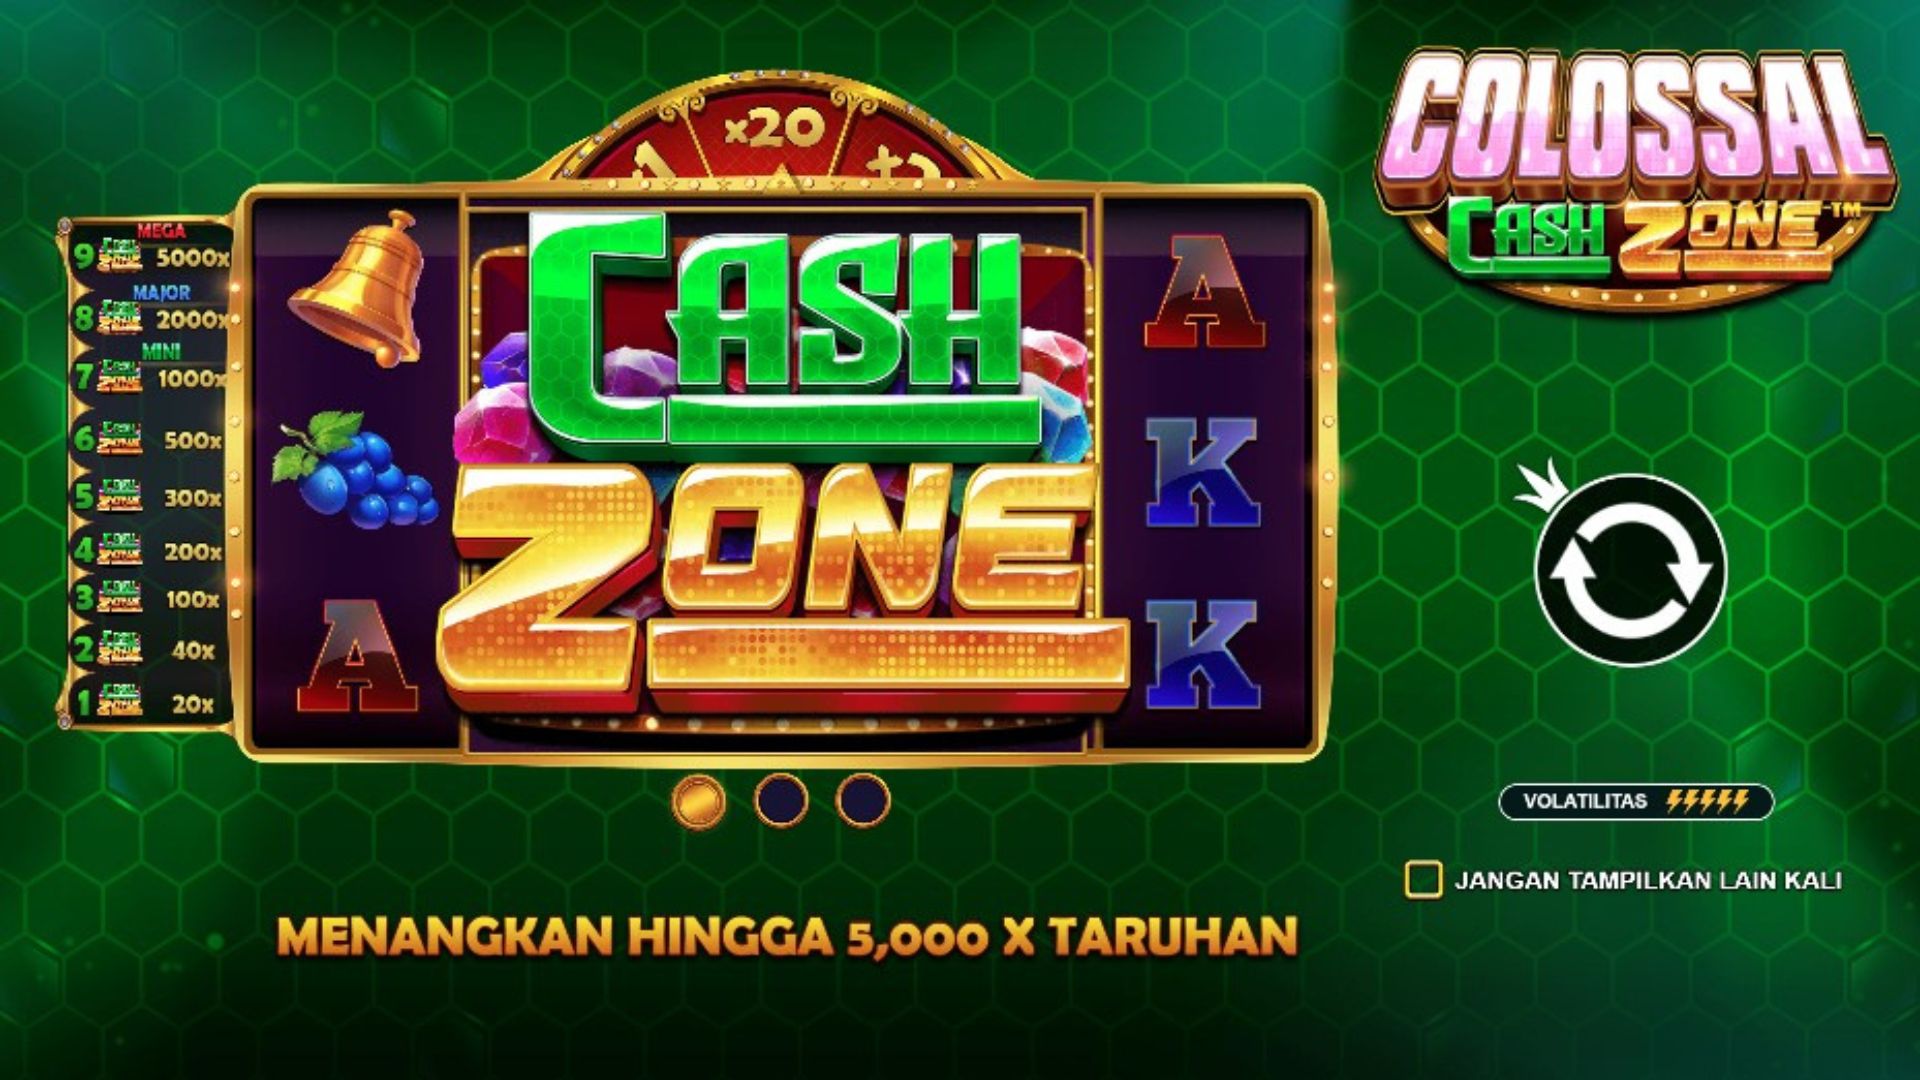 colossal cash zone gacor